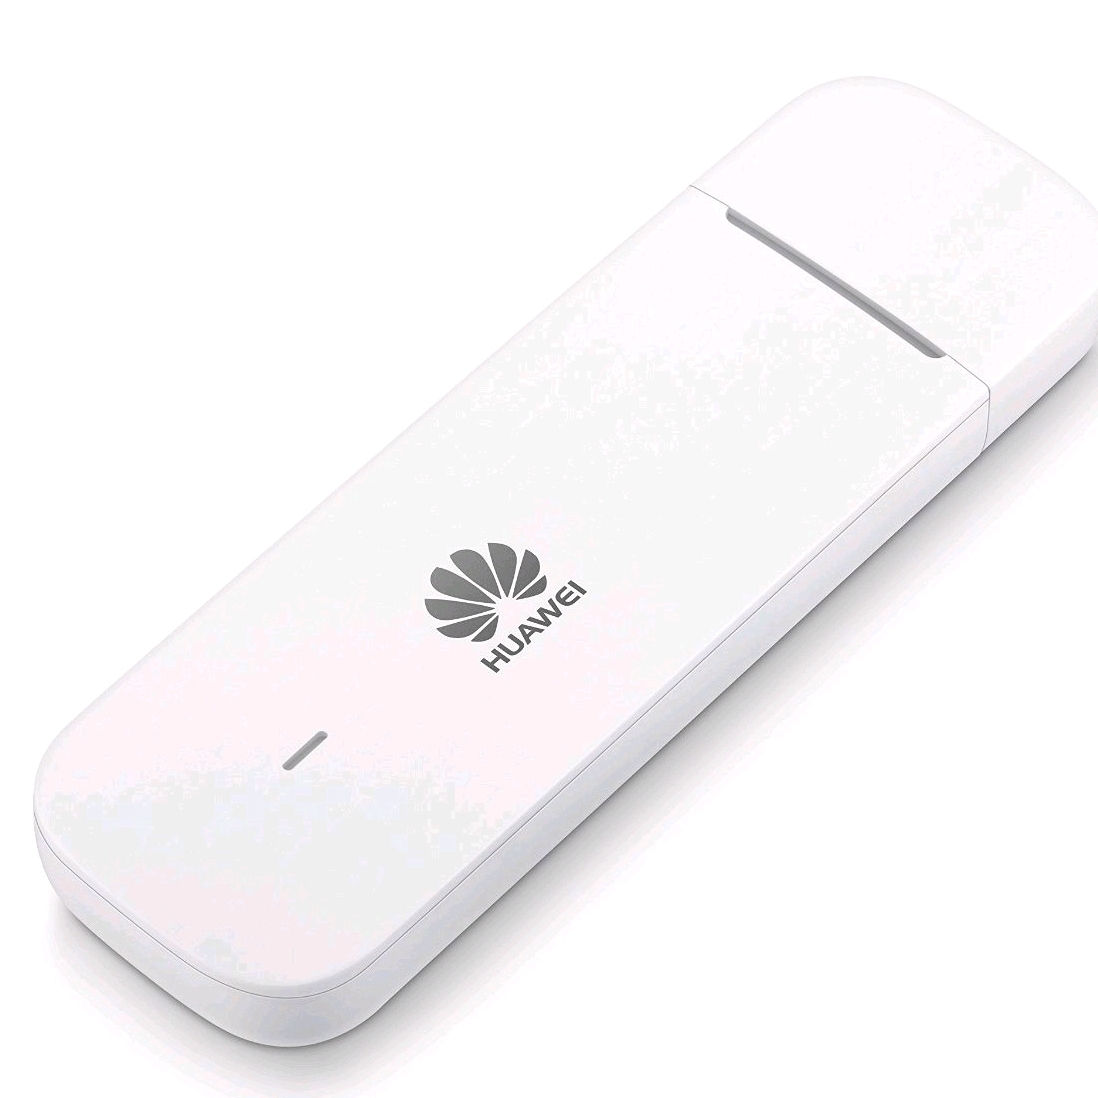 USB 4g Chất lượng cao Huawei E3372